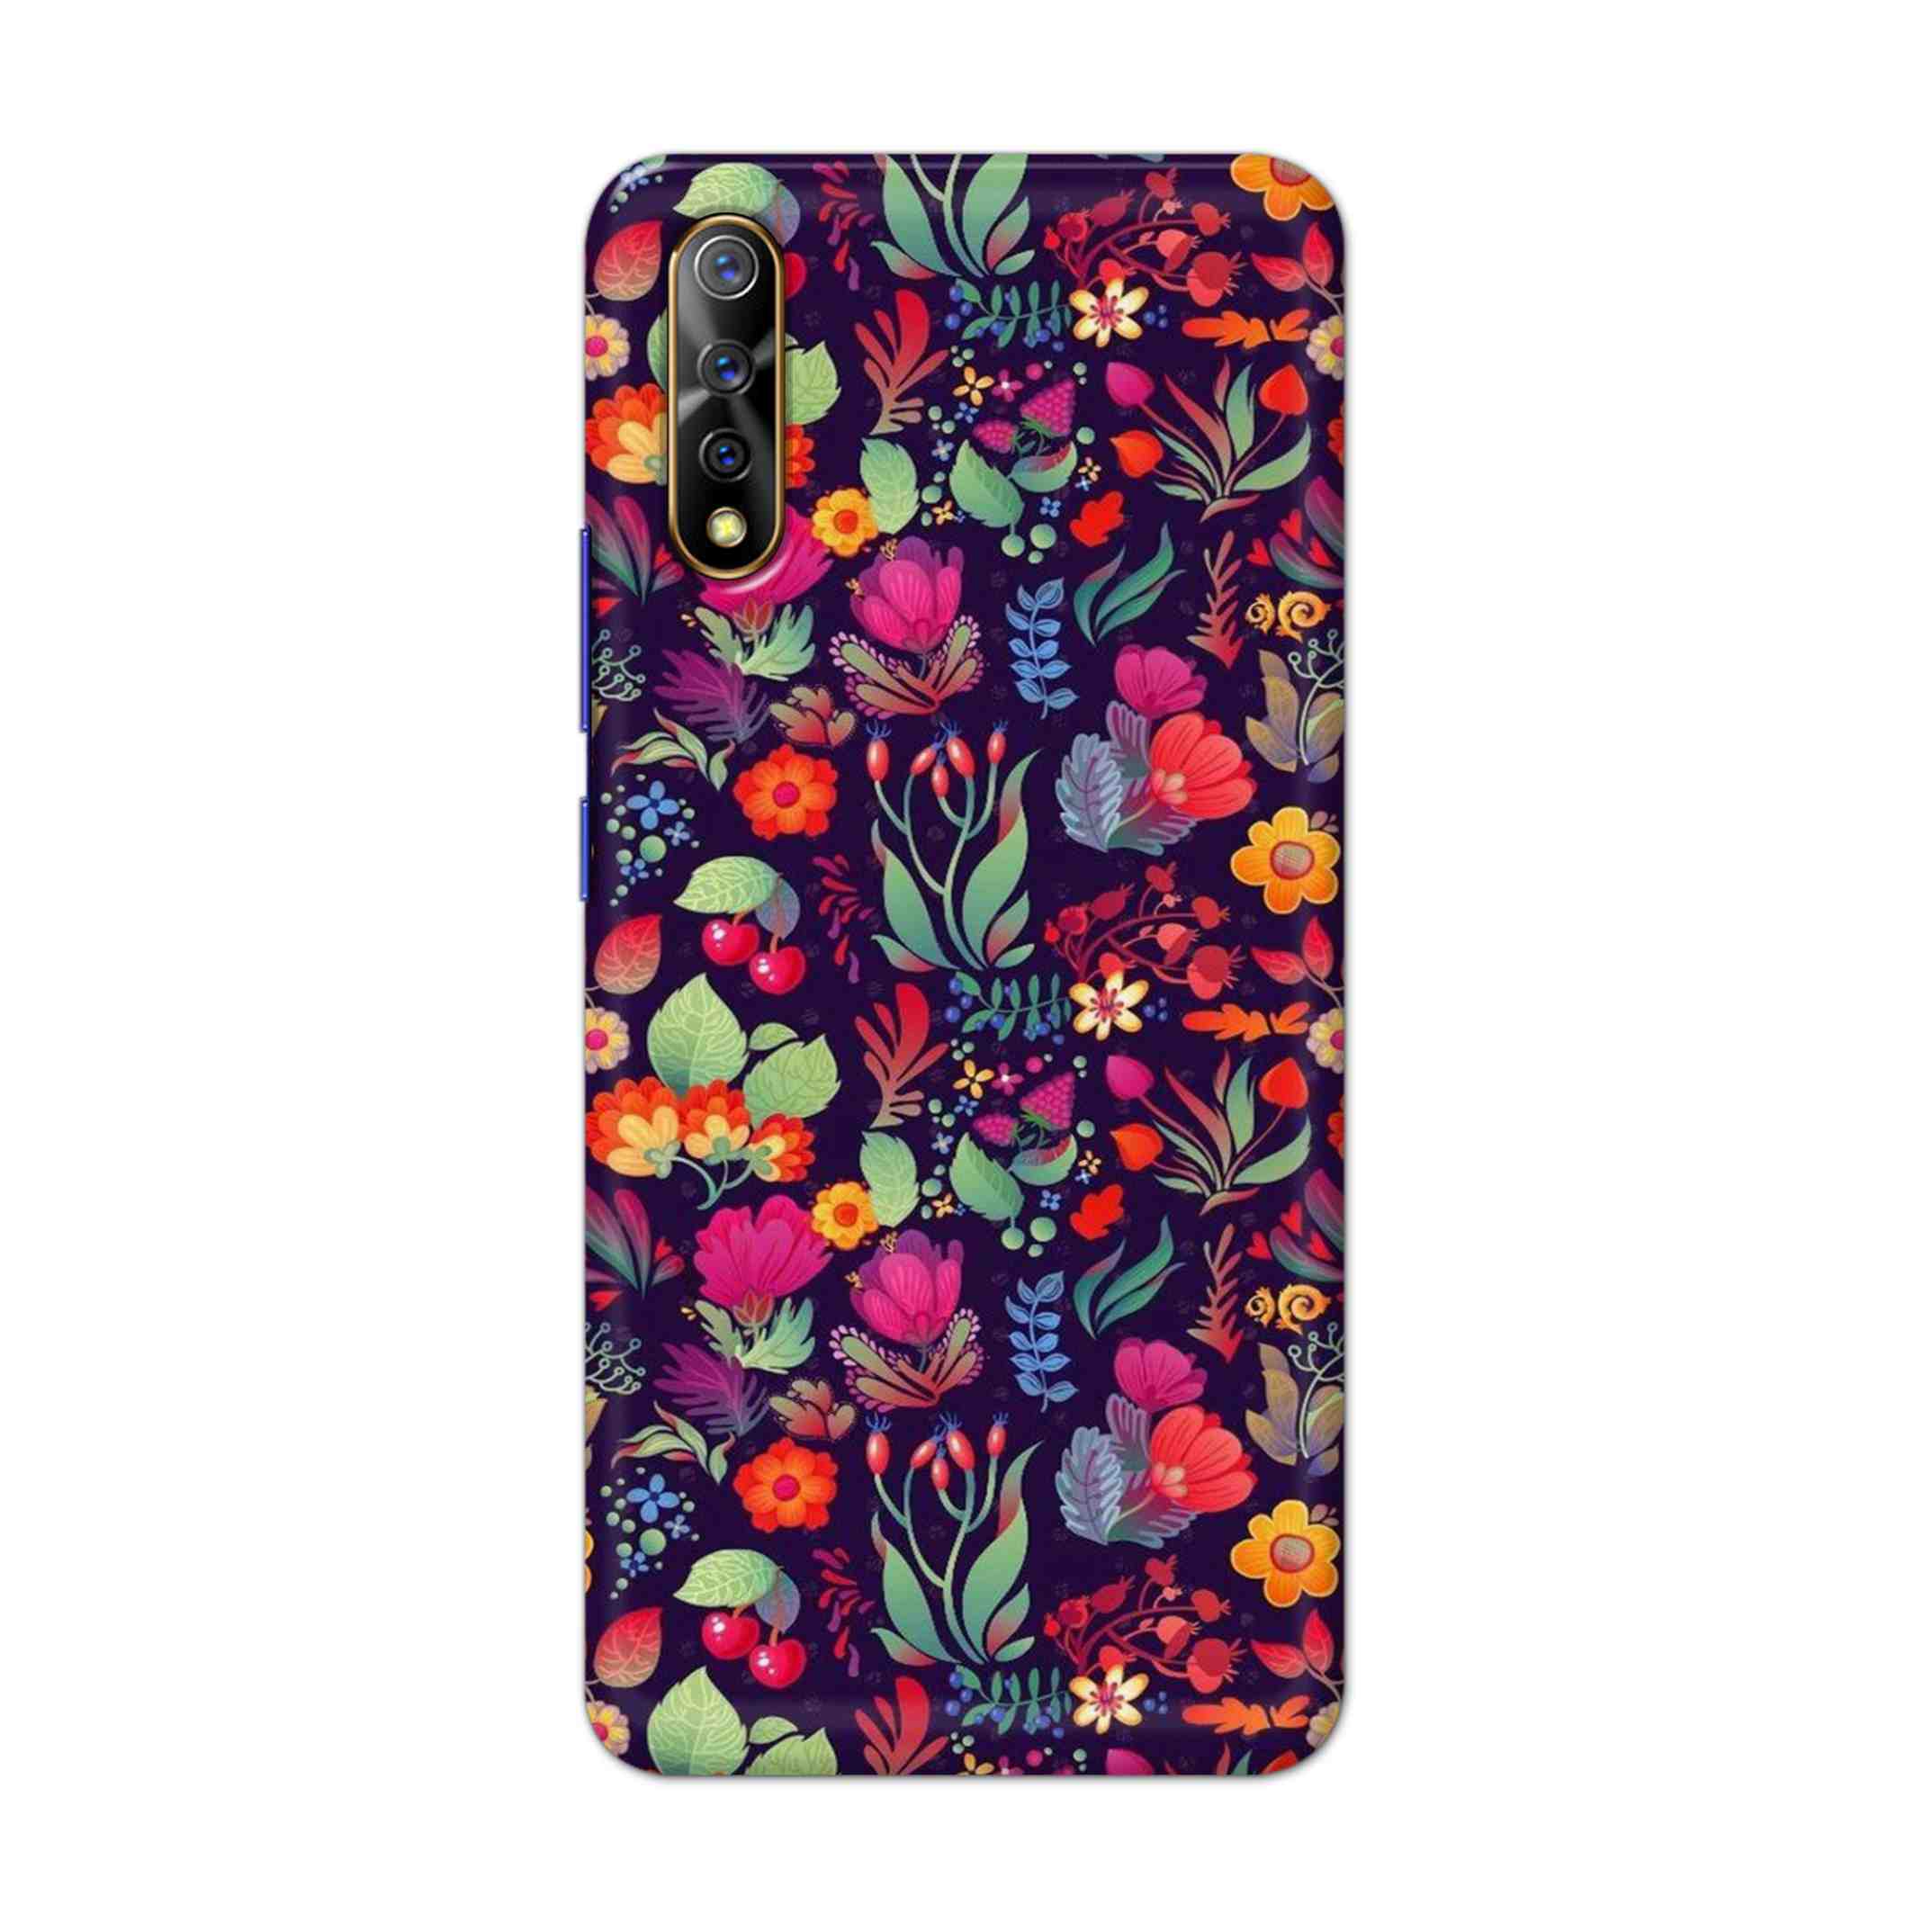 Buy Fruits Flower Hard Back Mobile Phone Case Cover For Vivo S1 / Z1x Online